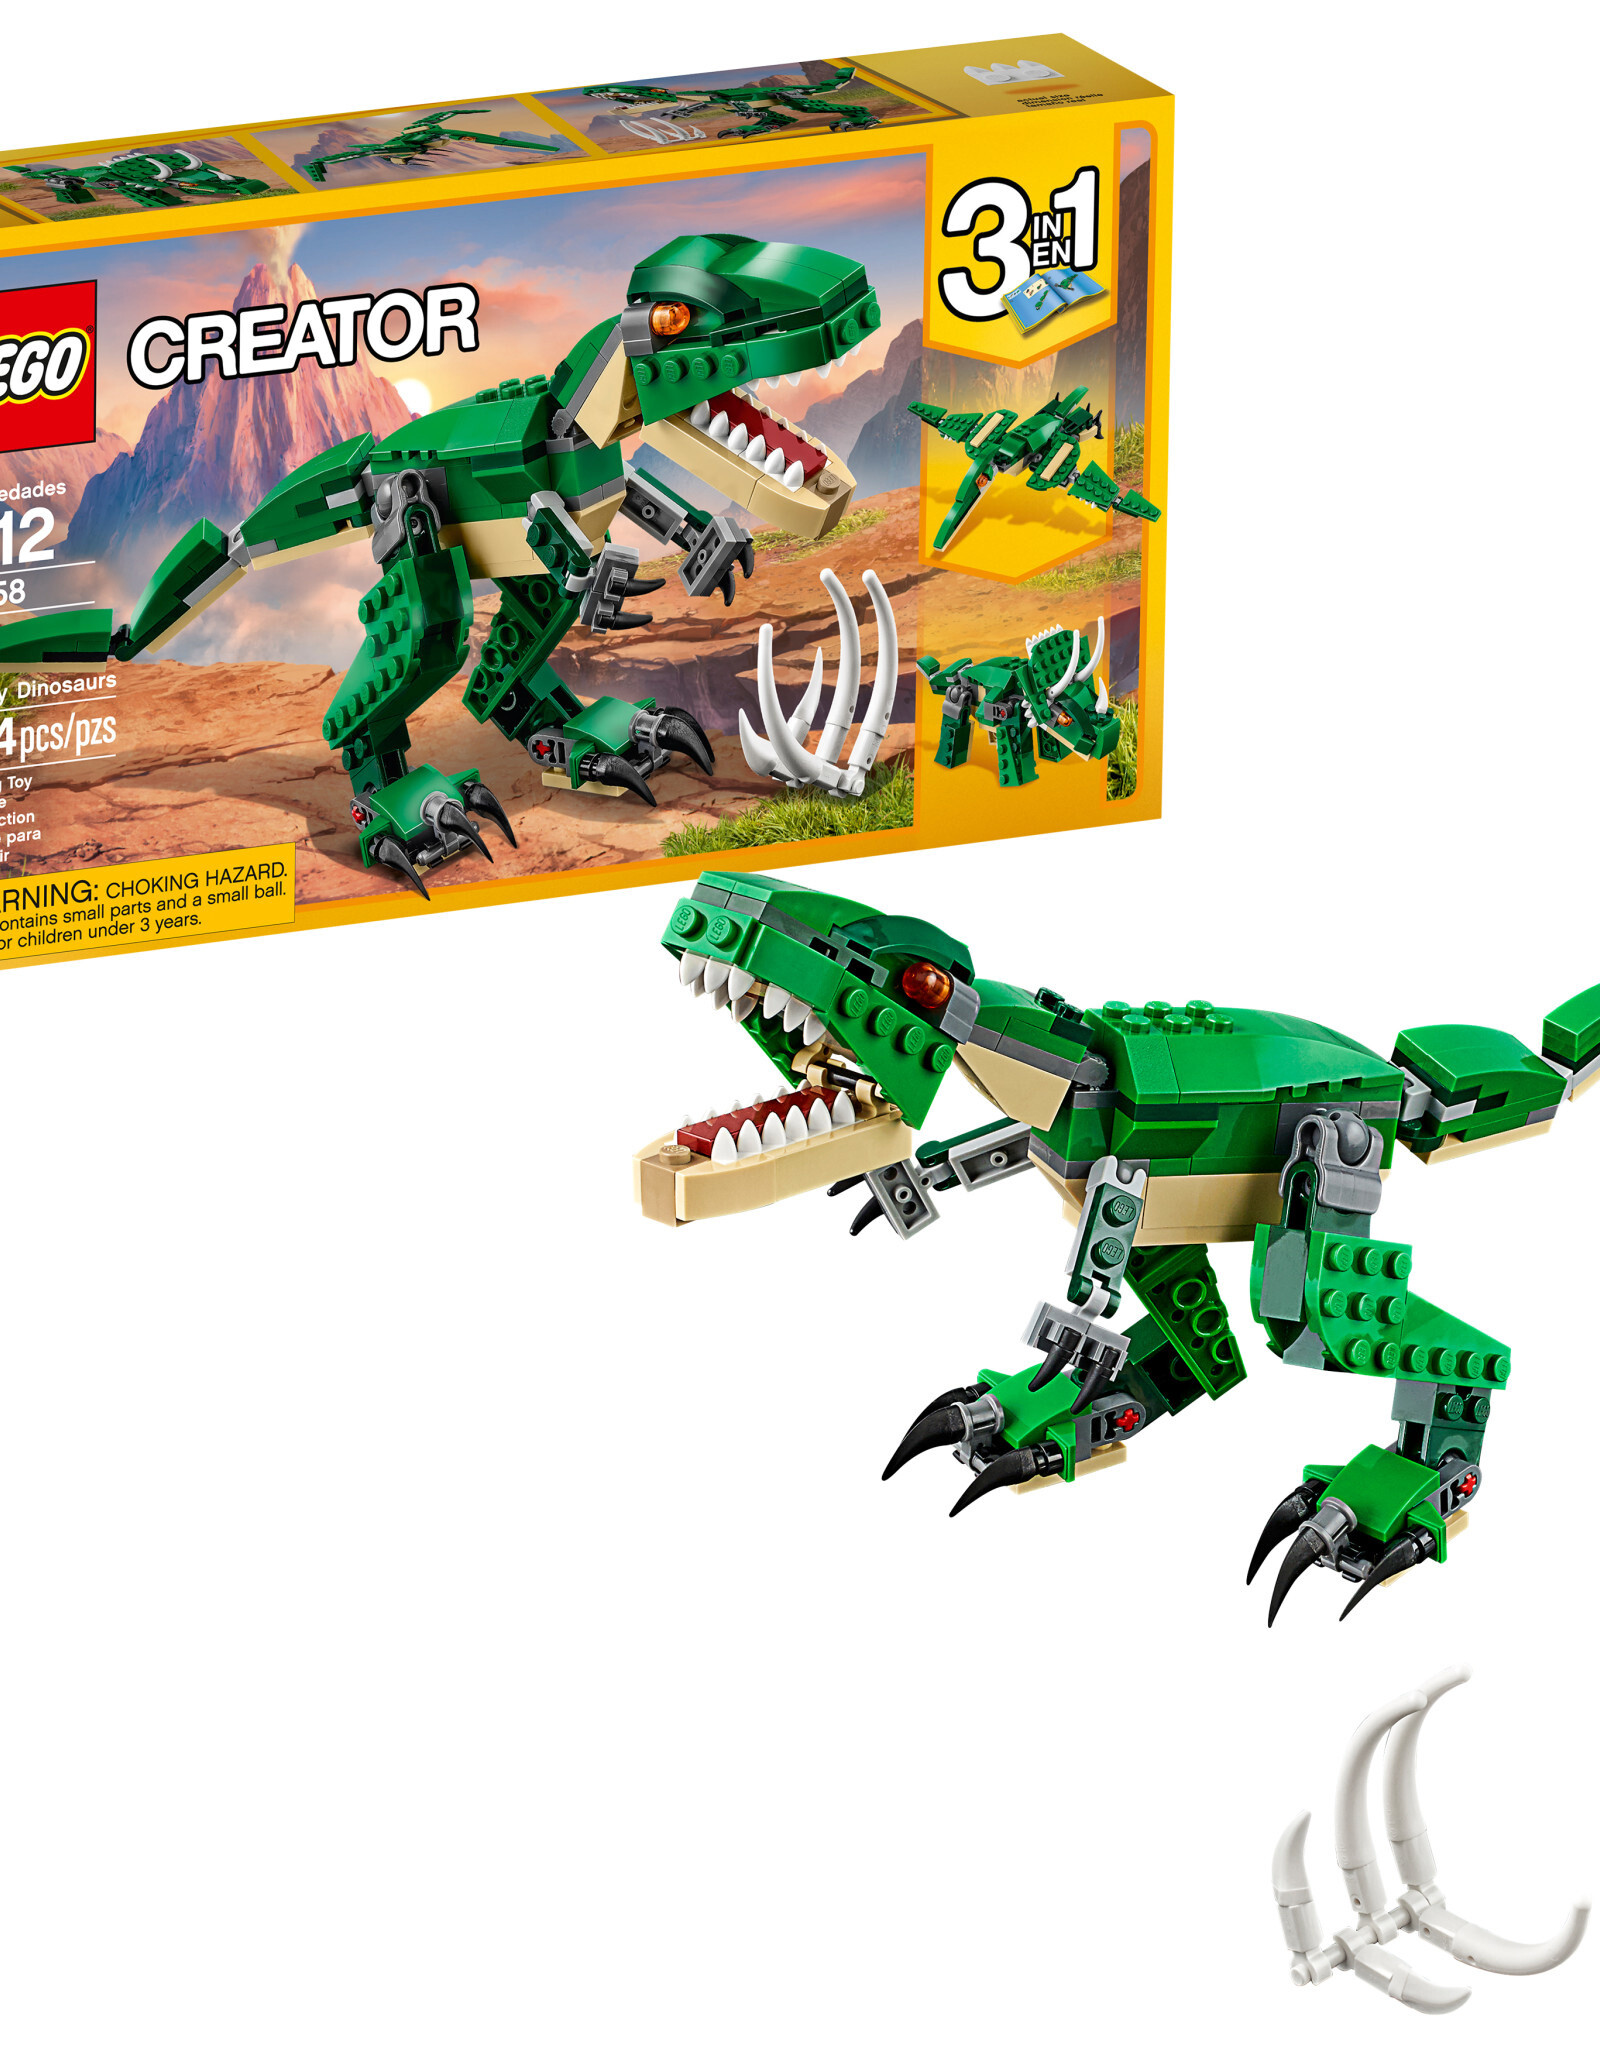 Lego LEGO Creator Mighty Dinosaurs V39